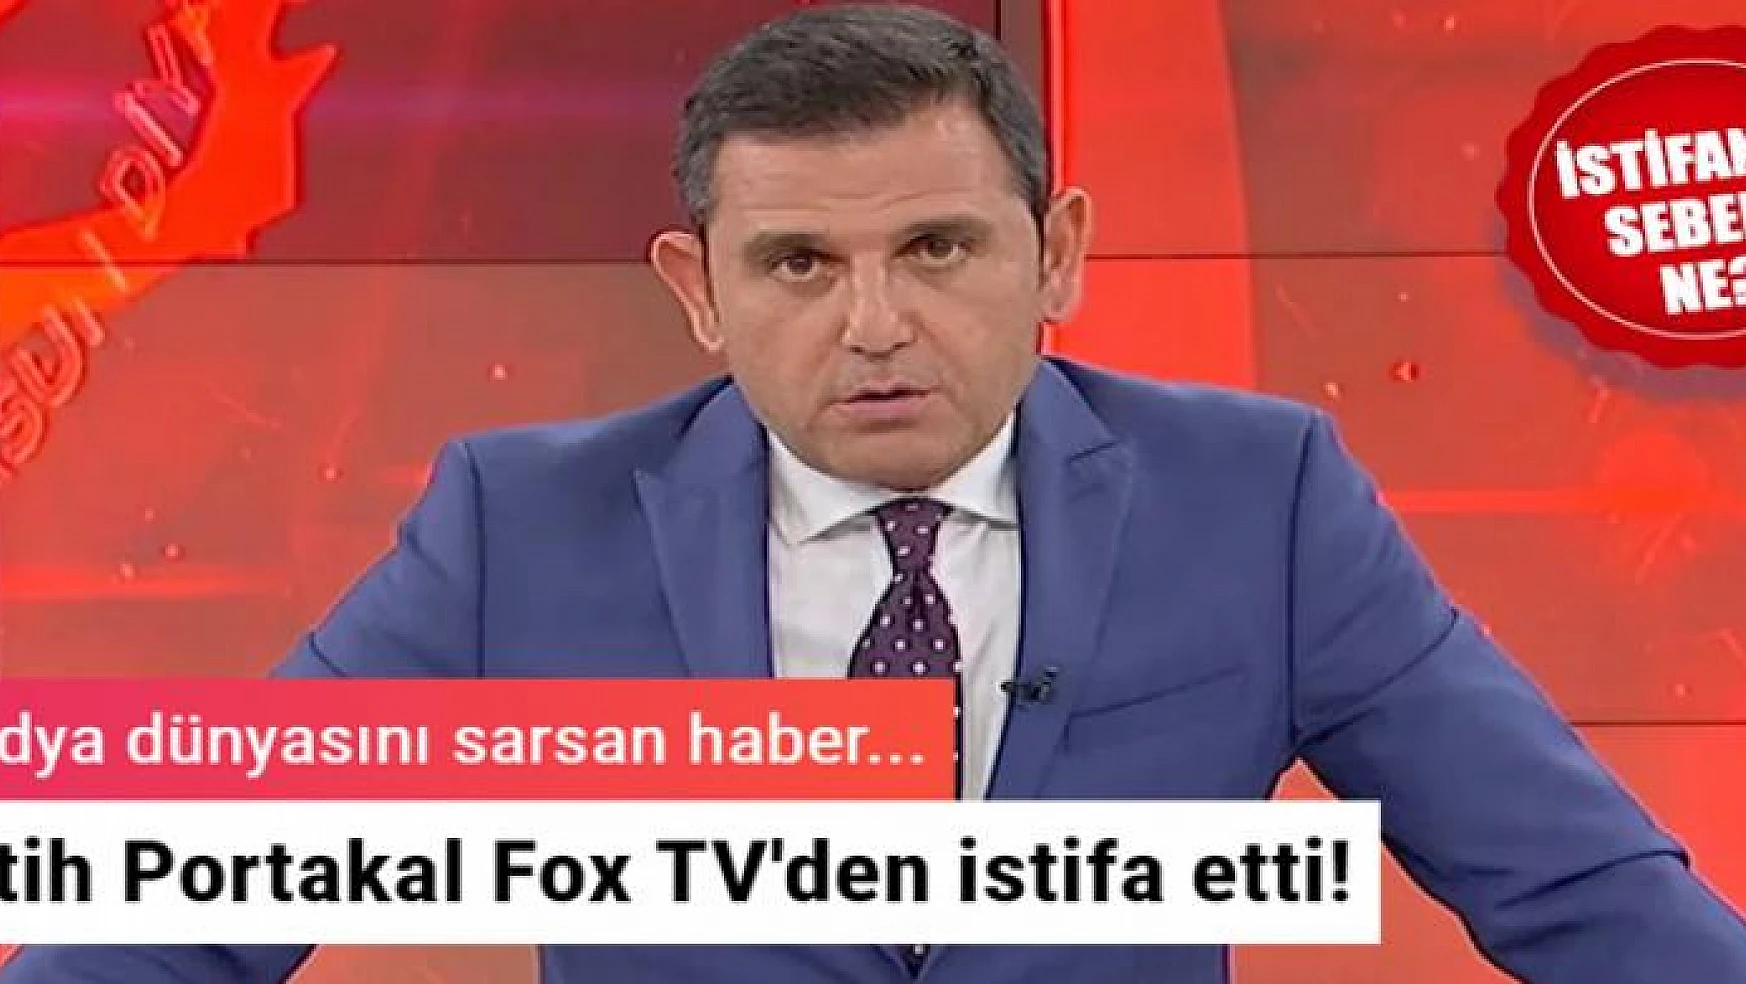 Medya dünyasında flaş gelişme! Fatih Portakal Fox TV'den istifa etti